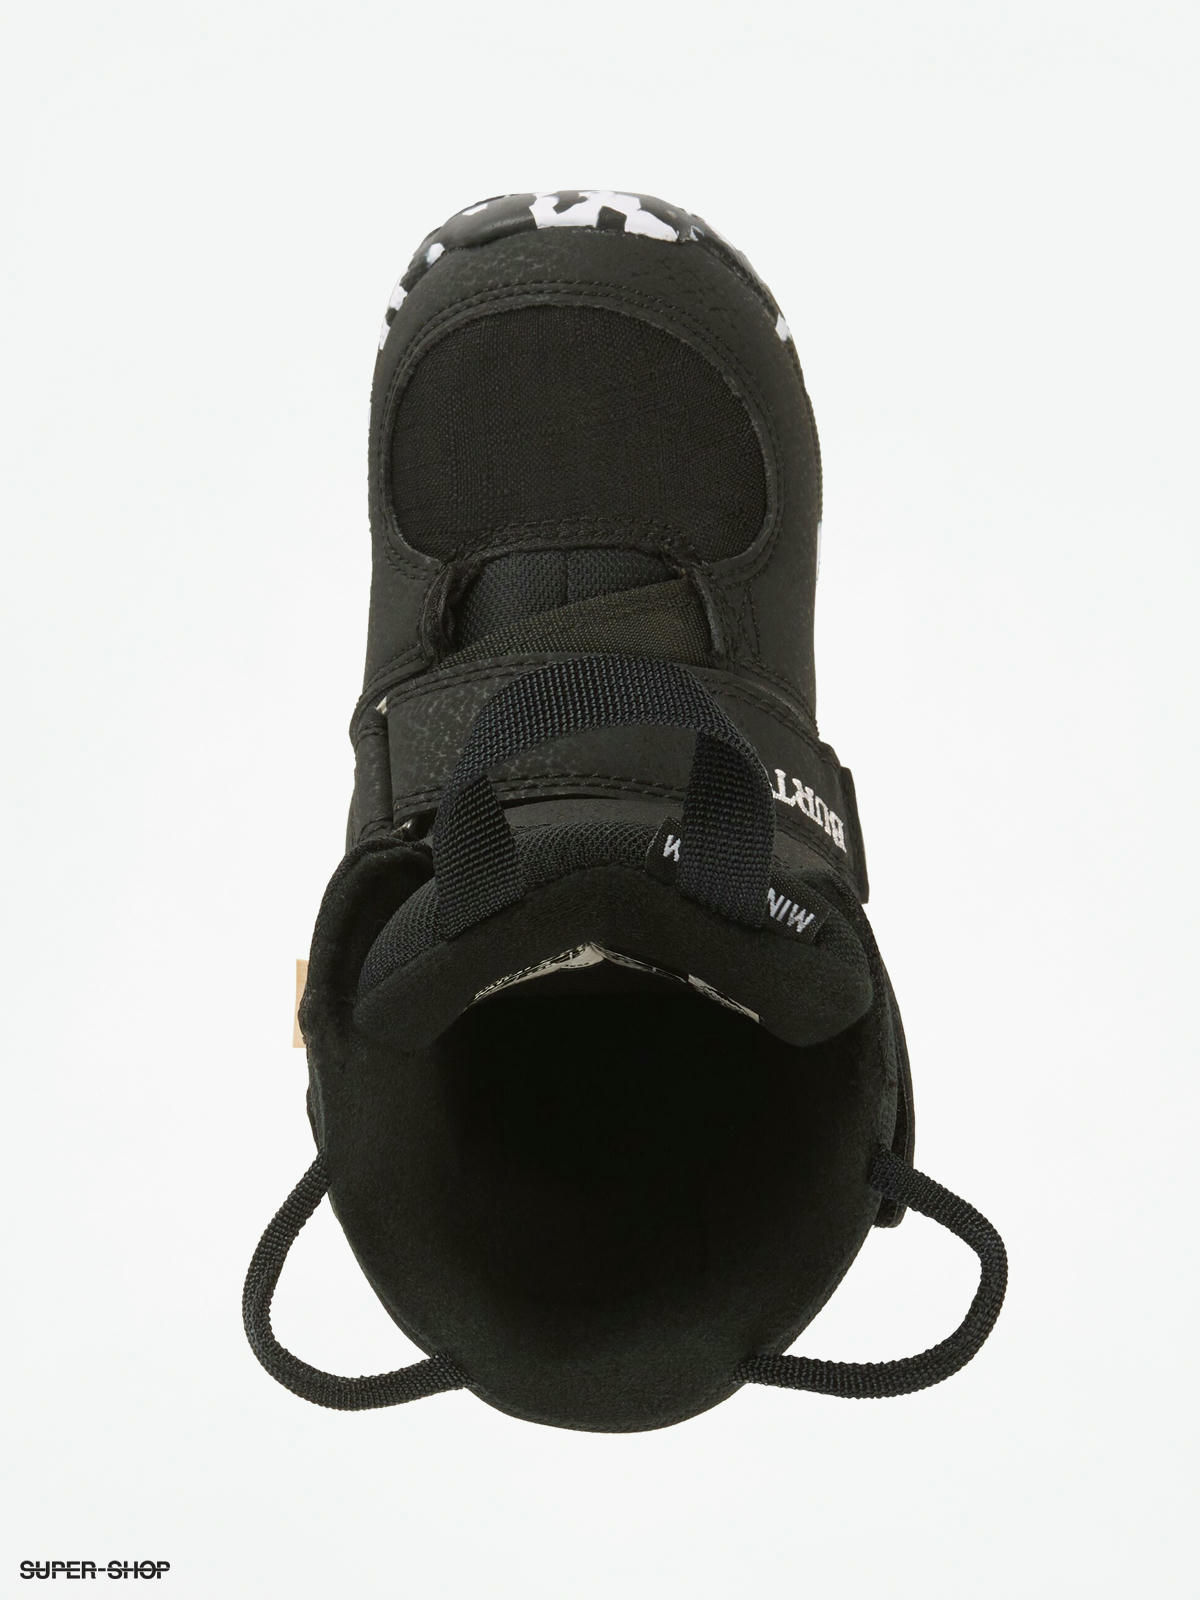 Burton Mini Grom Snowboard boots (black)